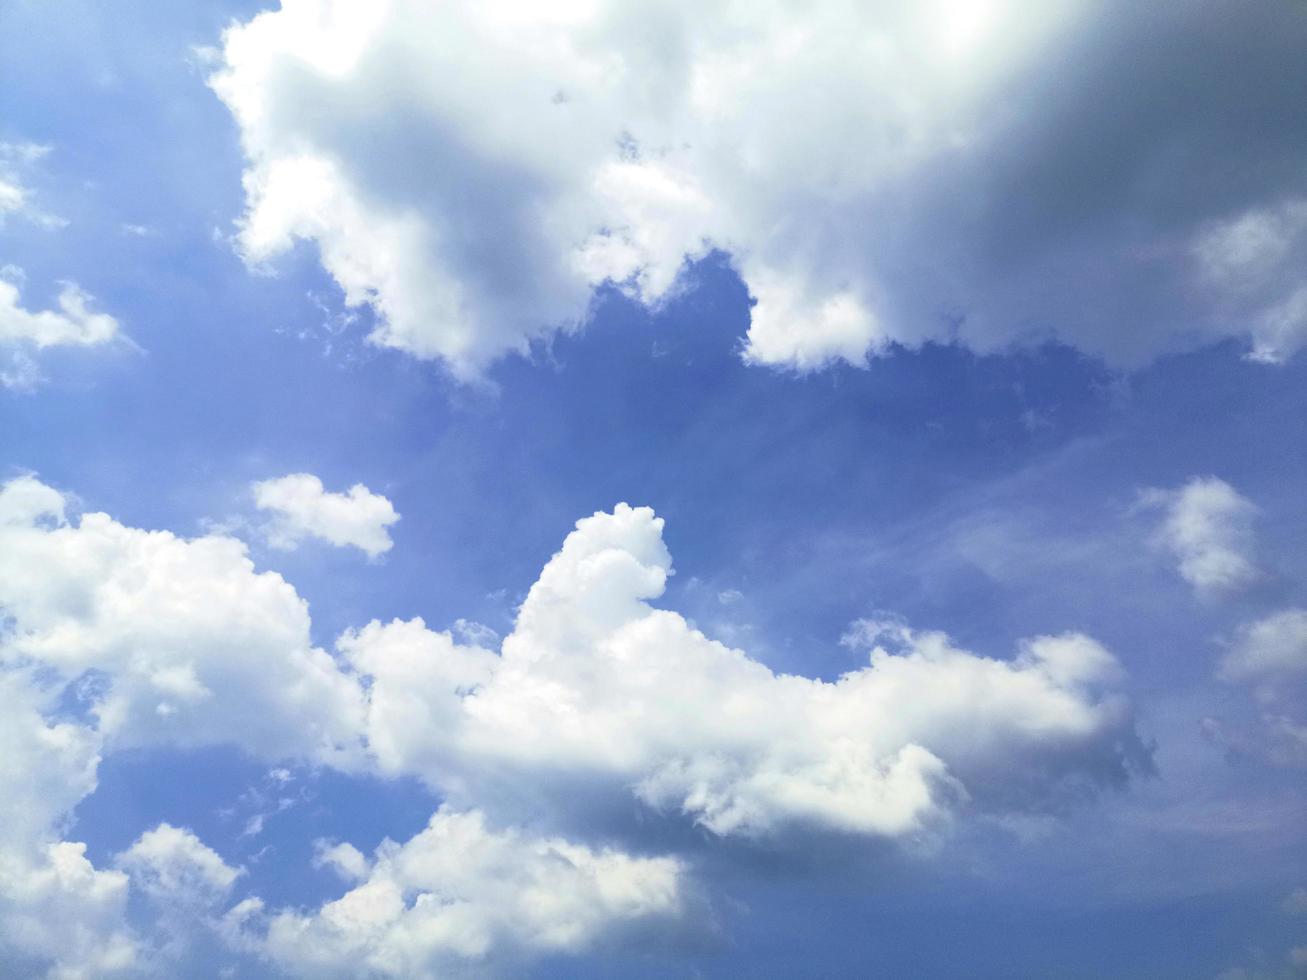 Weiße Wolke und schöner blauer Himmel - Luftwolken am blauen Himmel. - blauer Hintergrund in der Luft foto